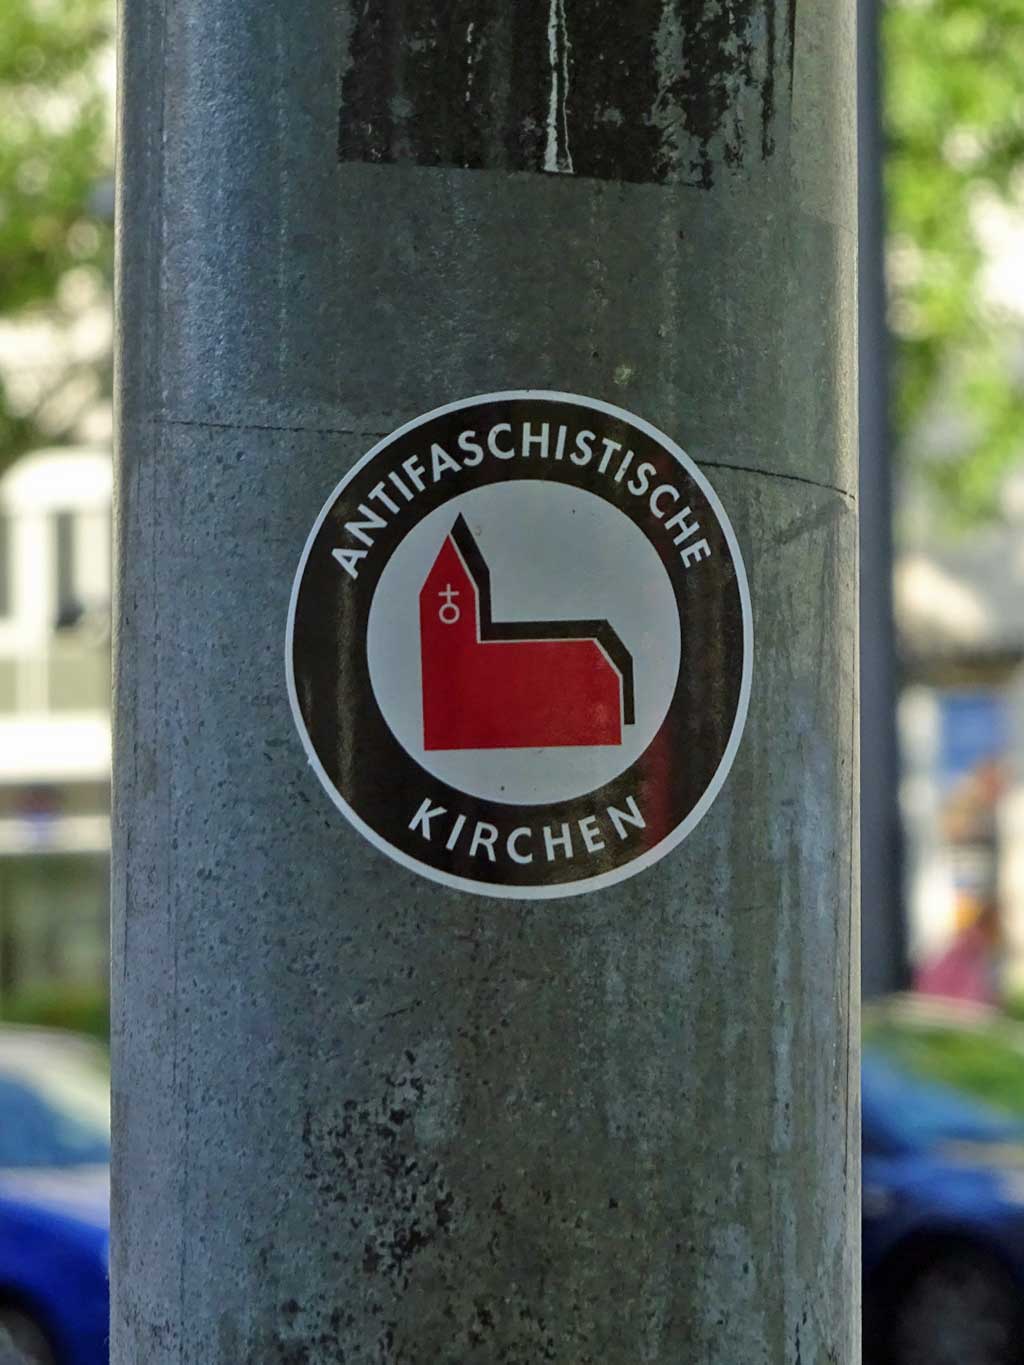 Aufkleber-Varianten zum Logo der Antifaschistische Aktion